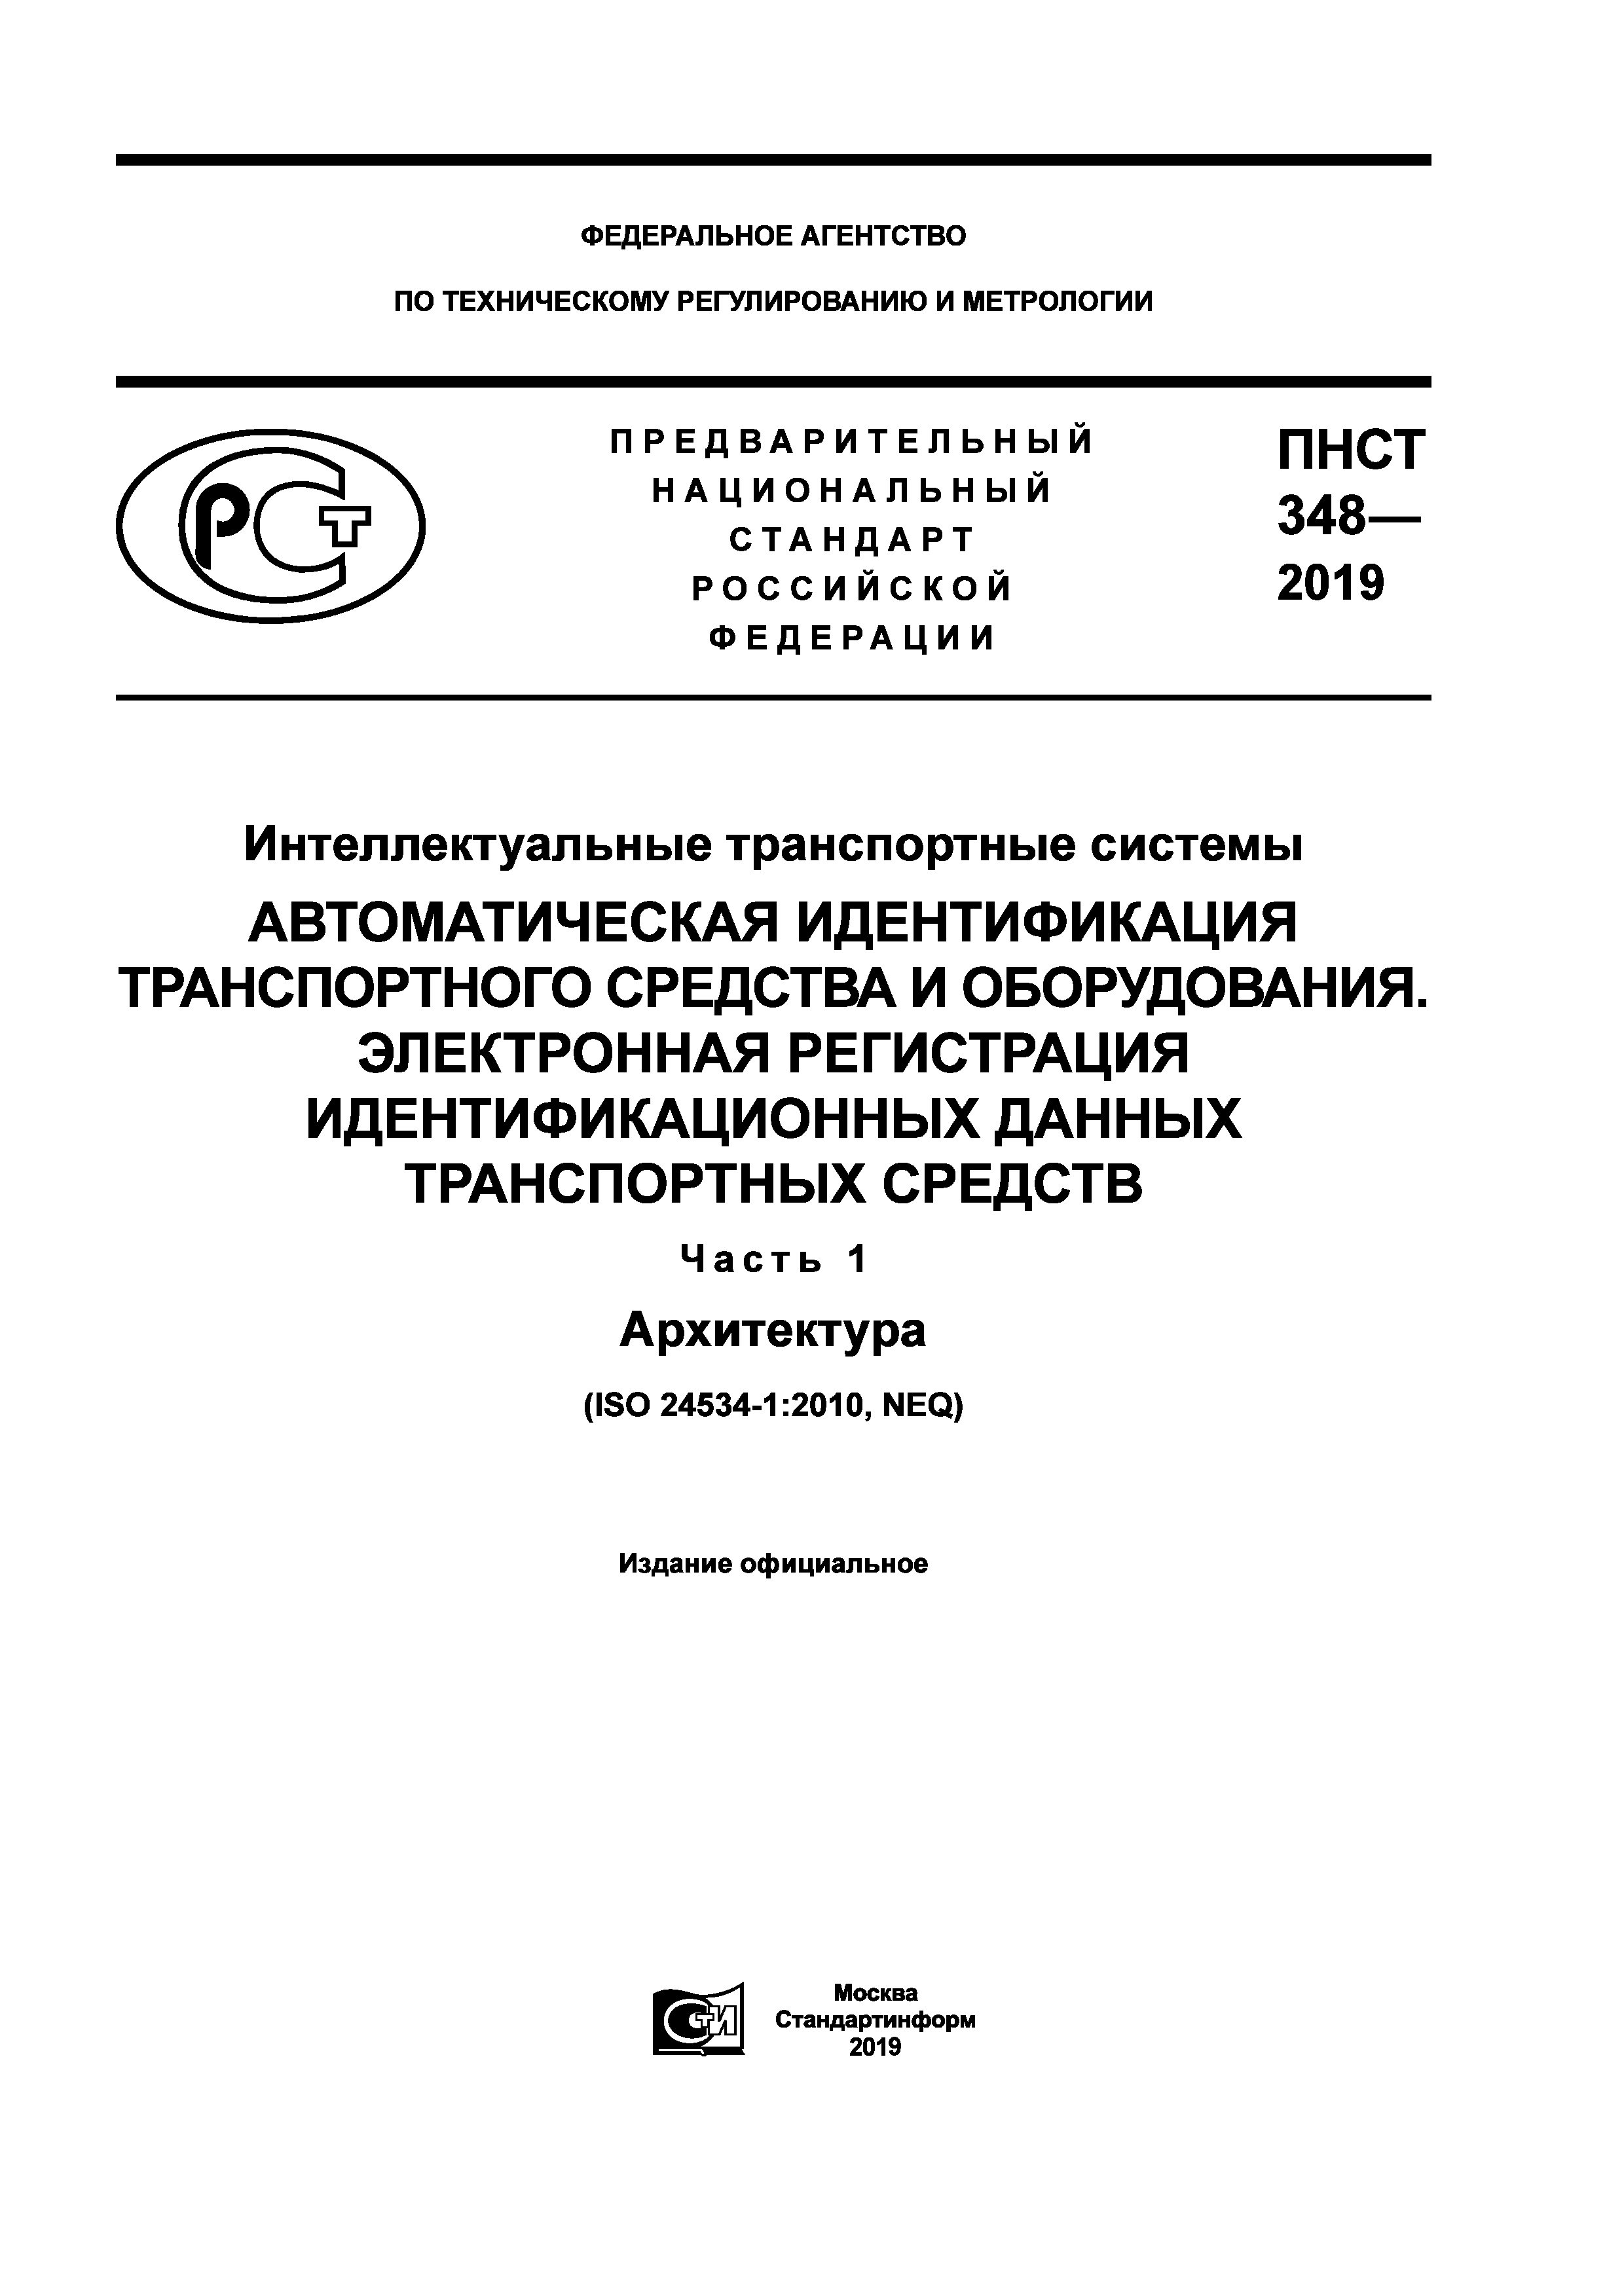 ПНСТ 348-2019